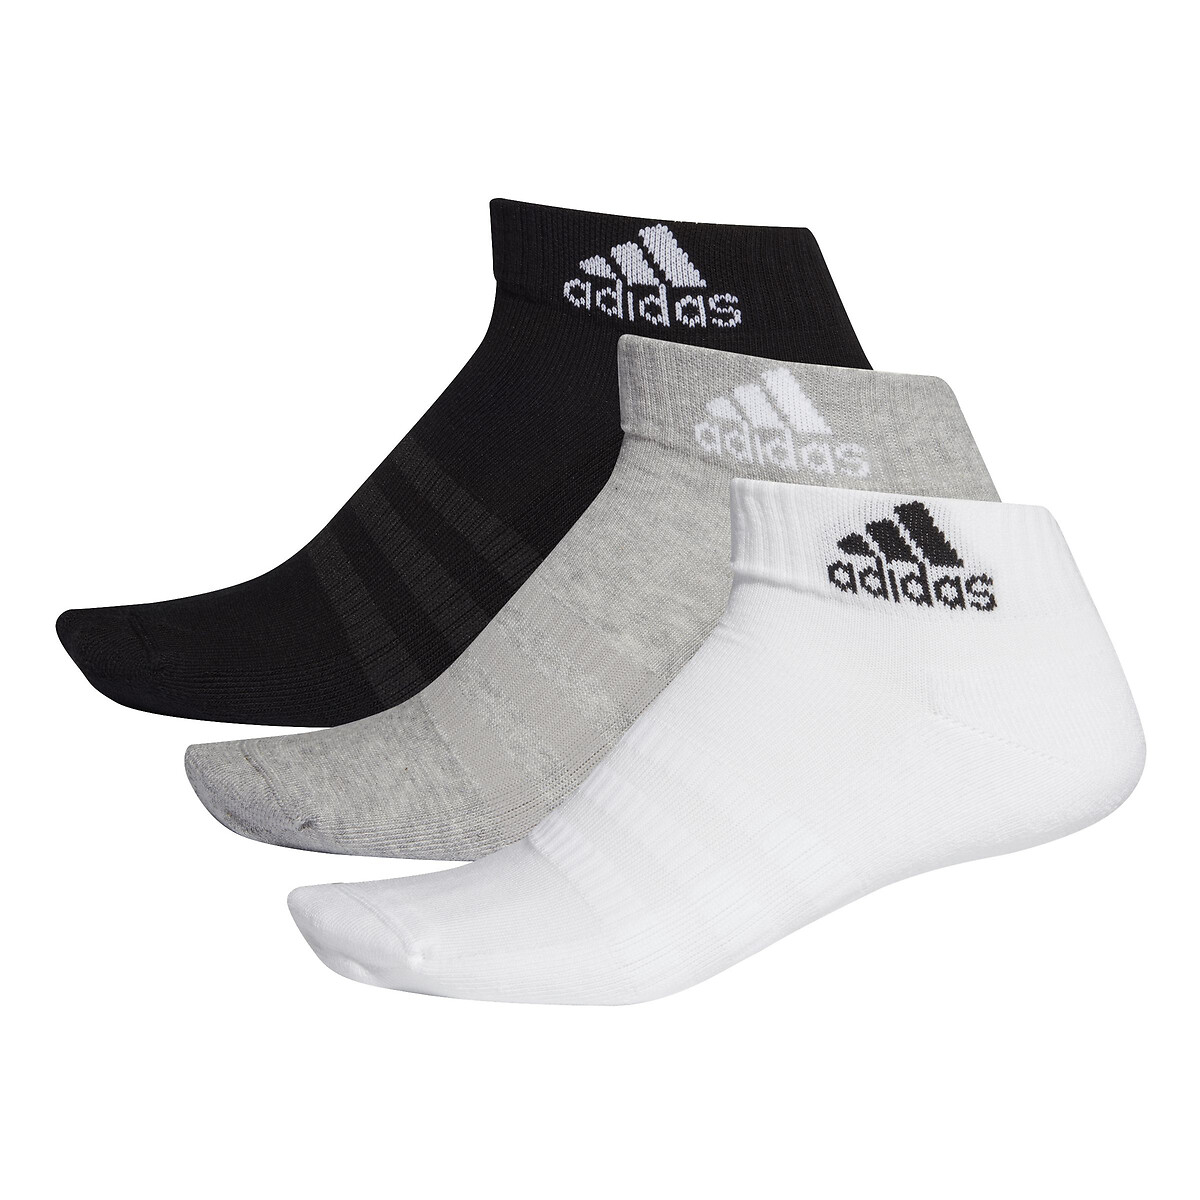 añadir Llamarada hardware Lote de 3 pares de calcetines cortos negro + blanco + gris Adidas Originals  | La Redoute